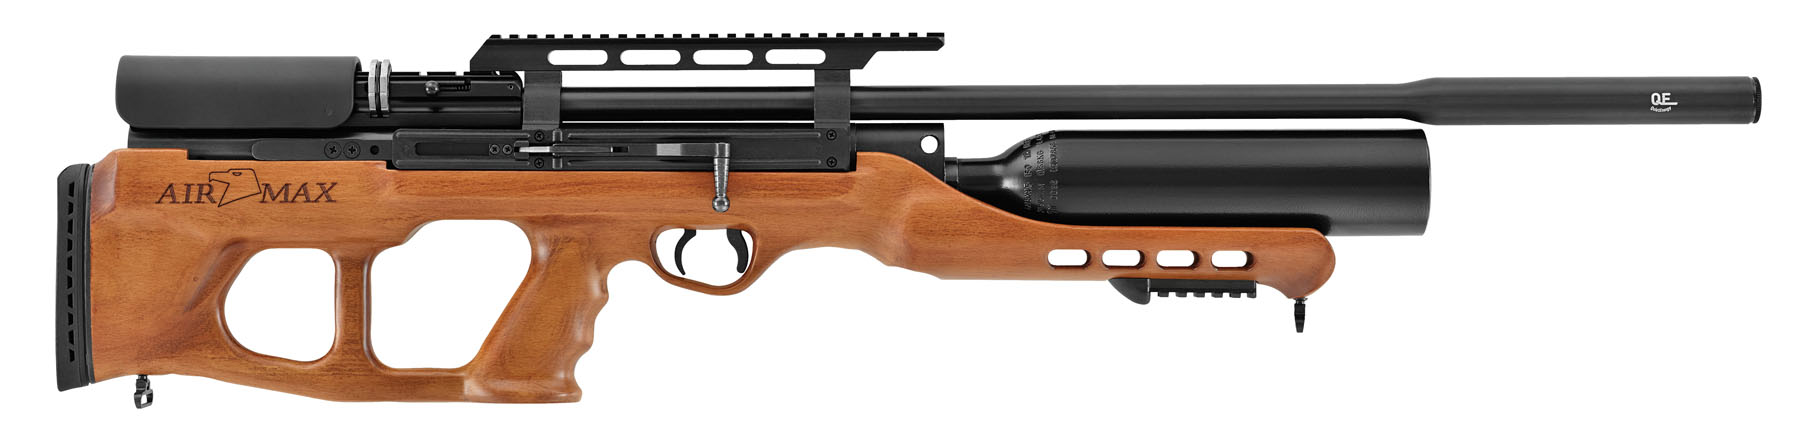 Hatsanusa Releases Accurate Elegance Airmax Pcp Air Rifle